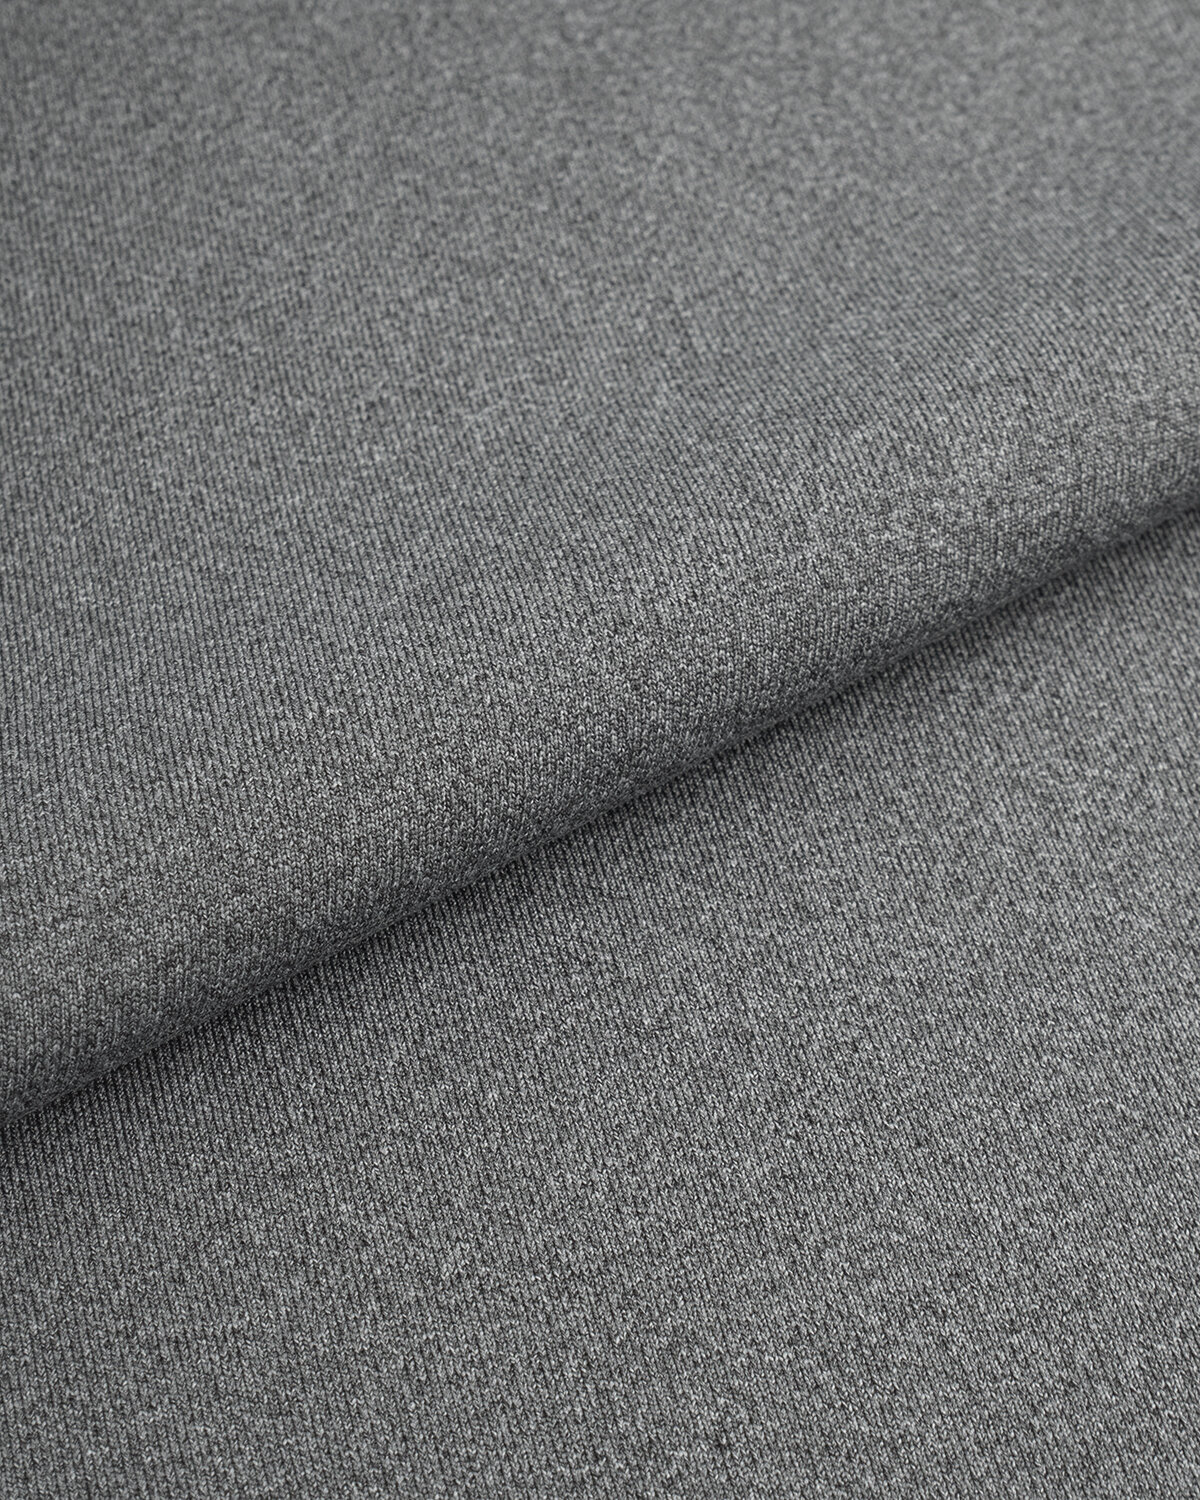 Ткань для шитья и рукоделия Бифлекс меланж 1 м * 164 см серый 001